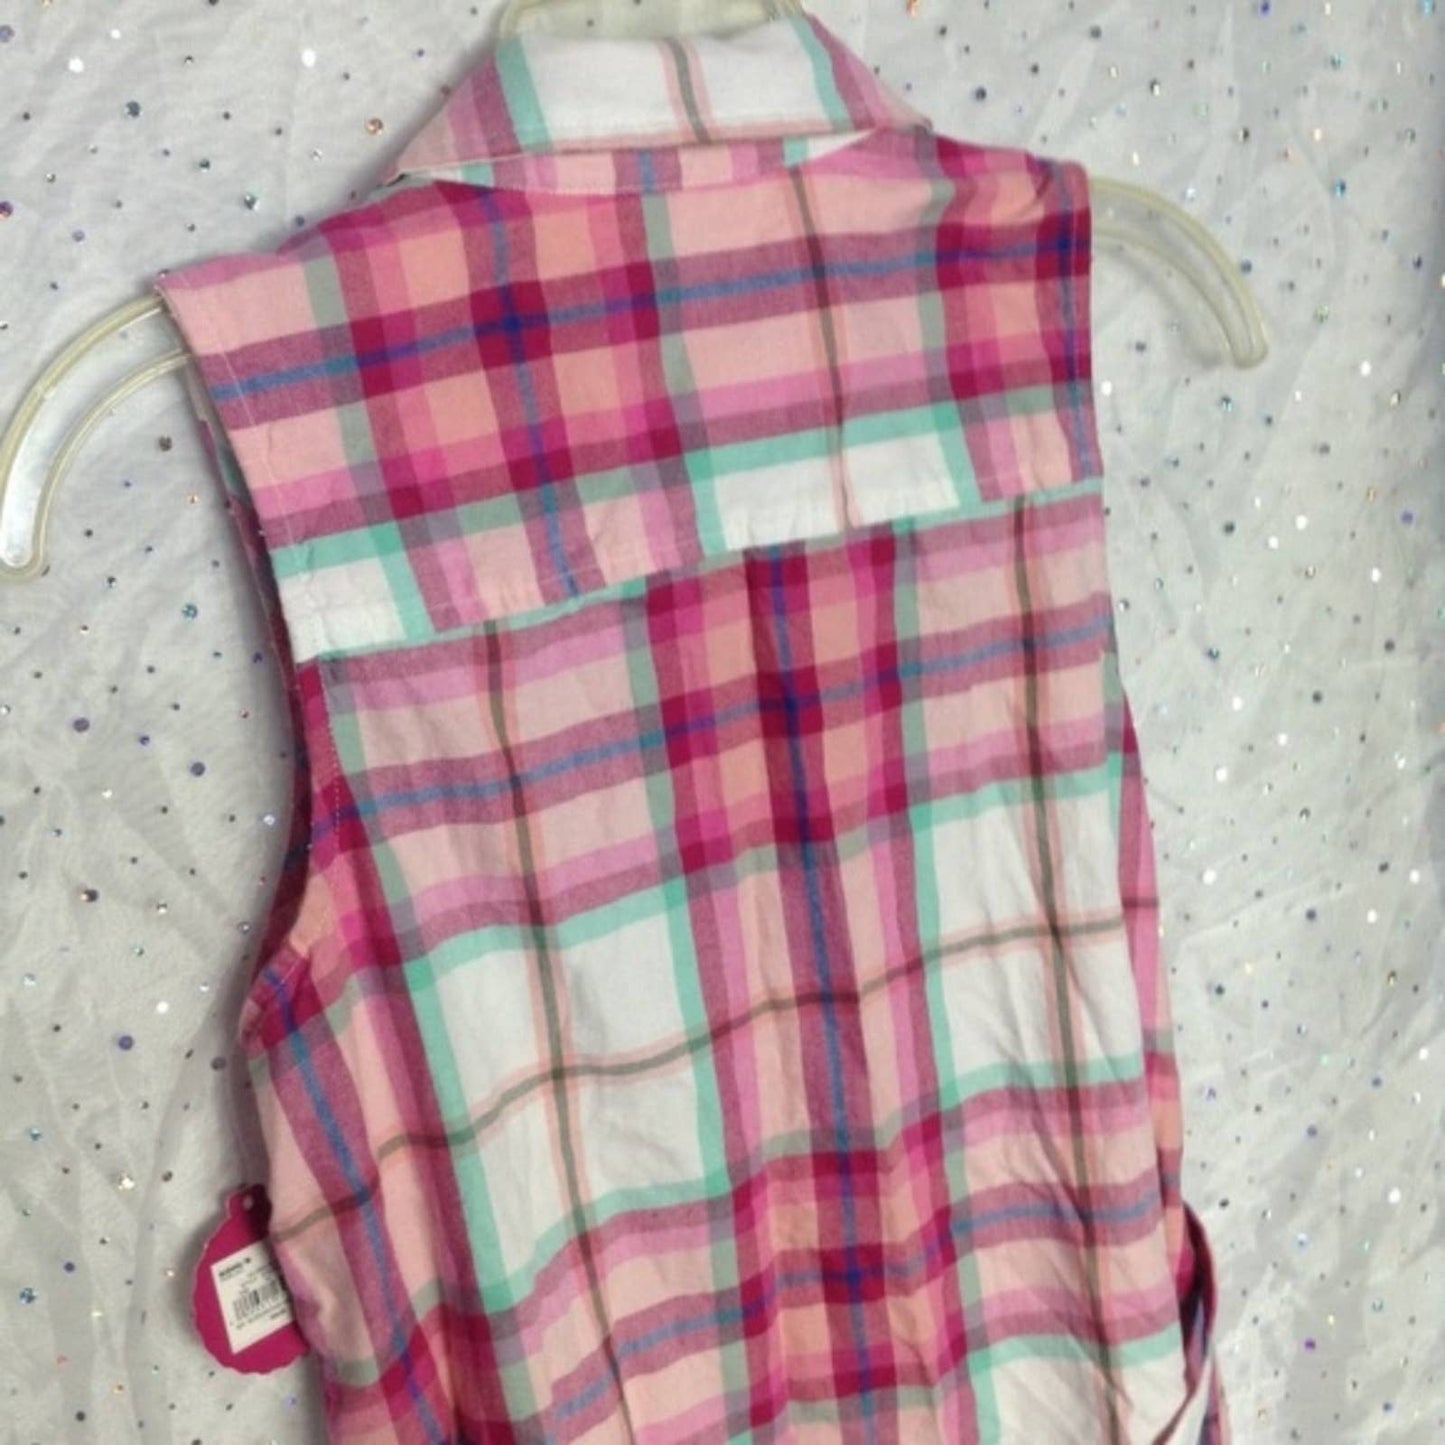 SO Pink Plaid Sleeveless Shirt Dress Sequin XXL 16